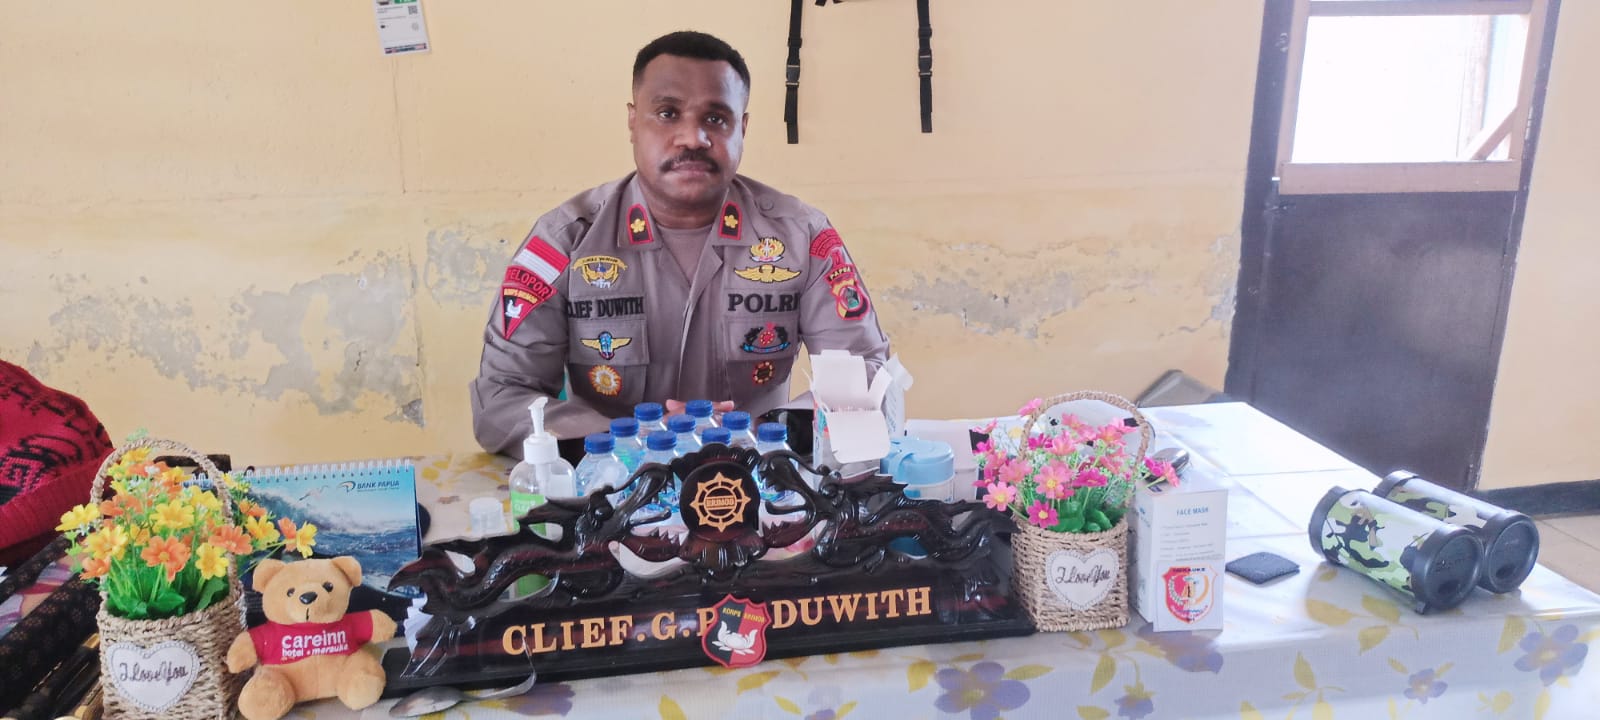 Danyon Batalyon Pelopor D, Komisaris Polisi (AKP) Clief Gerald P Duwith- Surya Papua/Frans Kobun